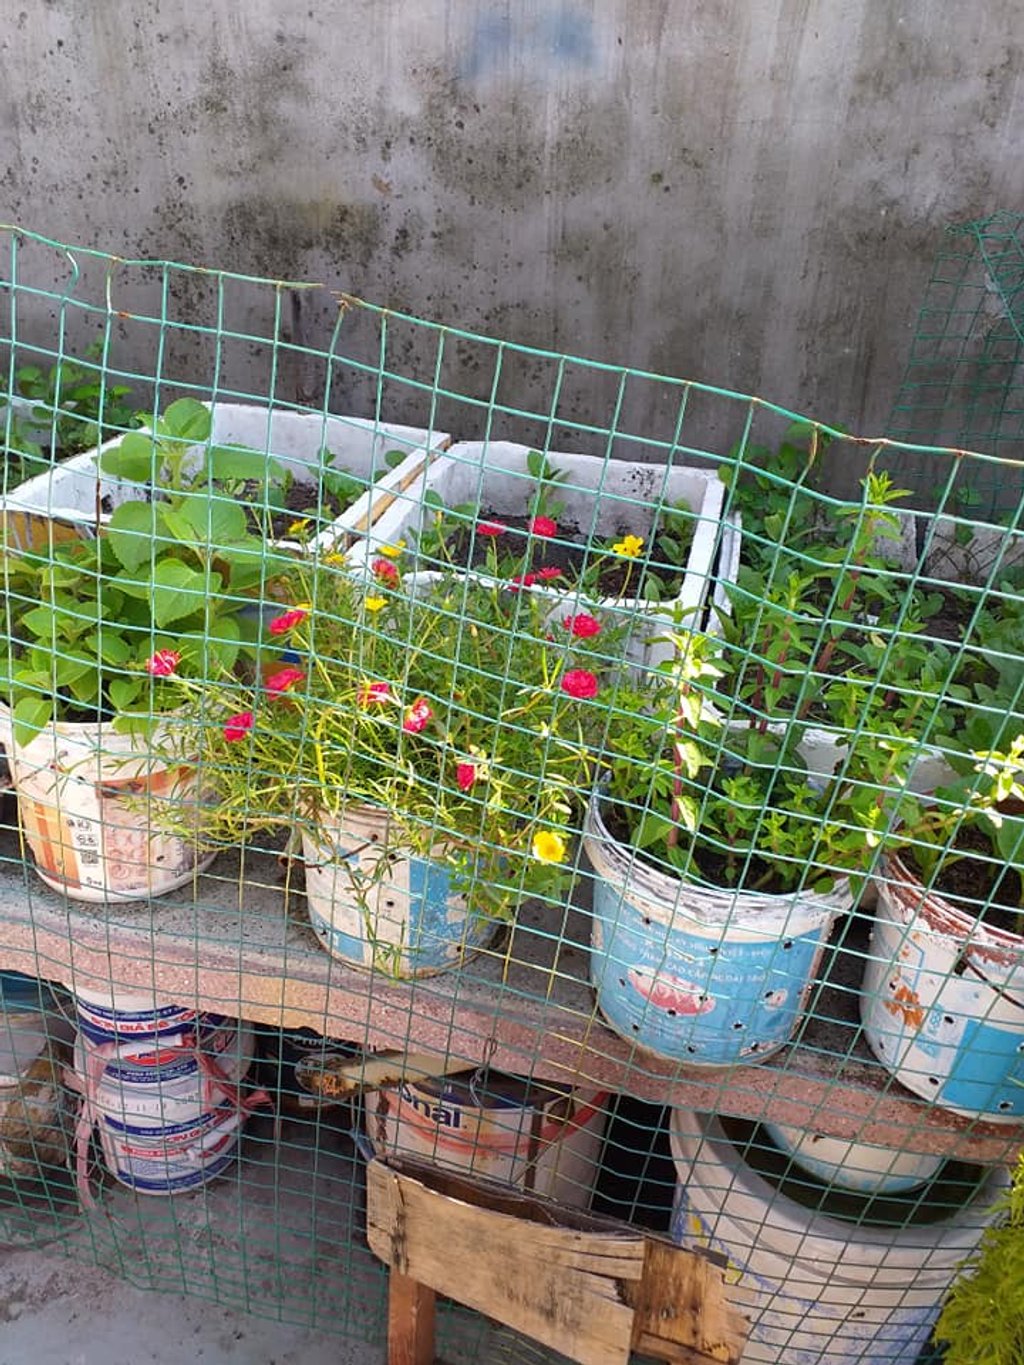 Đây là khoảng sân nhỏ được chị H.T tận dụng để trồng rau, trồng hoa. Sợ chó mèo vào phá, chị đã chăng lưới sắt rất cẩn thận.